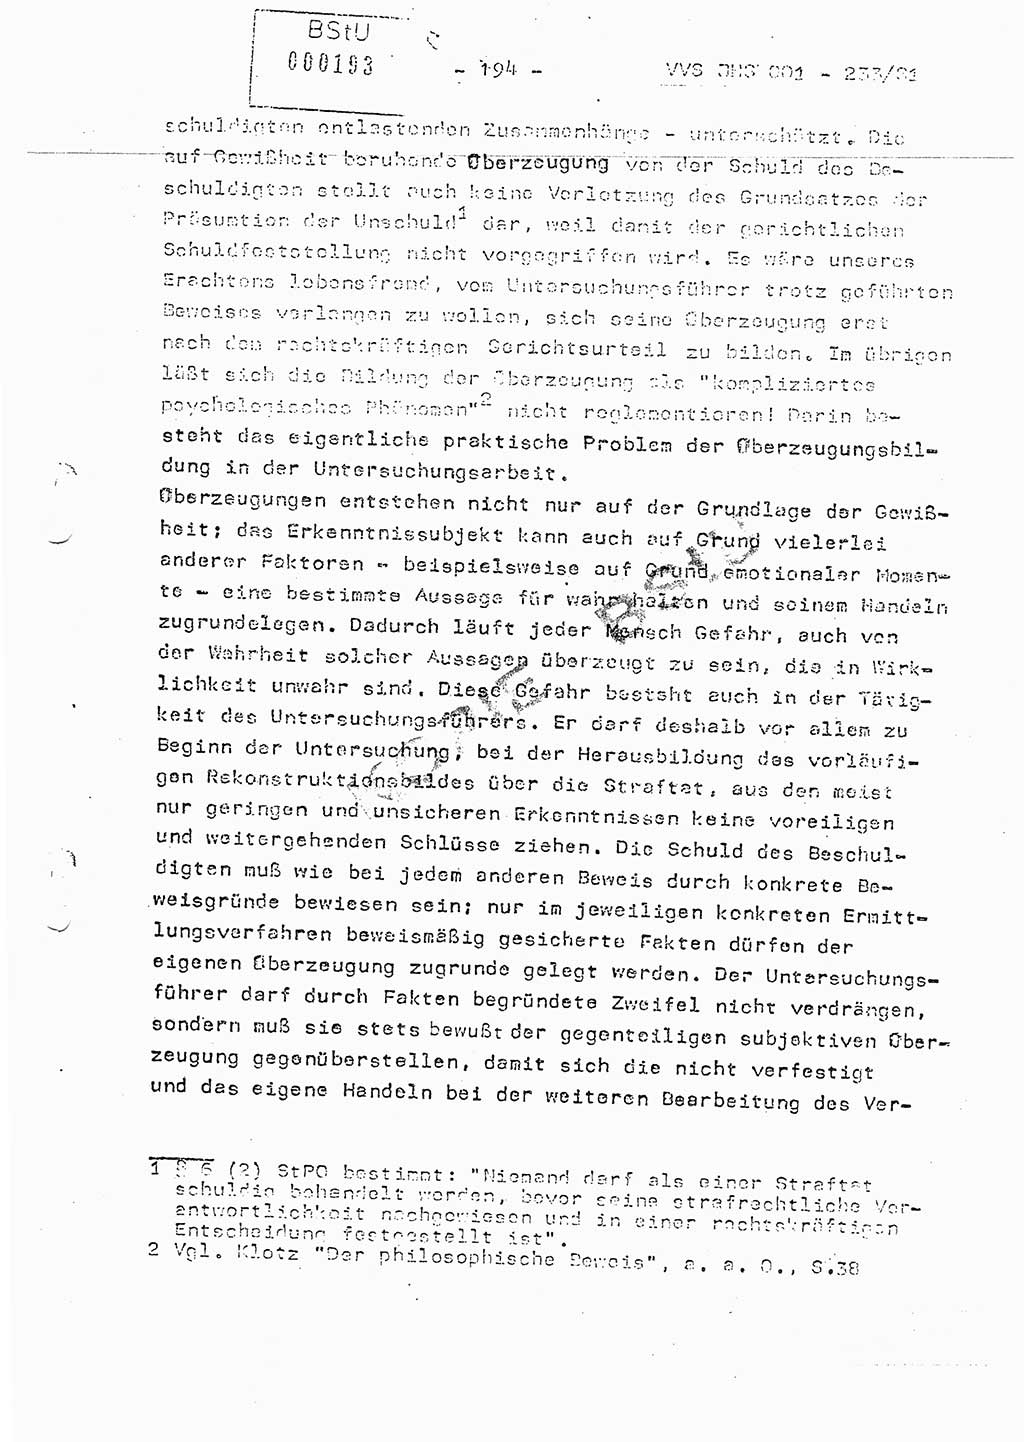 Dissertation Oberstleutnant Horst Zank (JHS), Oberstleutnant Dr. Karl-Heinz Knoblauch (JHS), Oberstleutnant Gustav-Adolf Kowalewski (HA Ⅸ), Oberstleutnant Wolfgang Plötner (HA Ⅸ), Ministerium für Staatssicherheit (MfS) [Deutsche Demokratische Republik (DDR)], Juristische Hochschule (JHS), Vertrauliche Verschlußsache (VVS) o001-233/81, Potsdam 1981, Blatt 194 (Diss. MfS DDR JHS VVS o001-233/81 1981, Bl. 194)